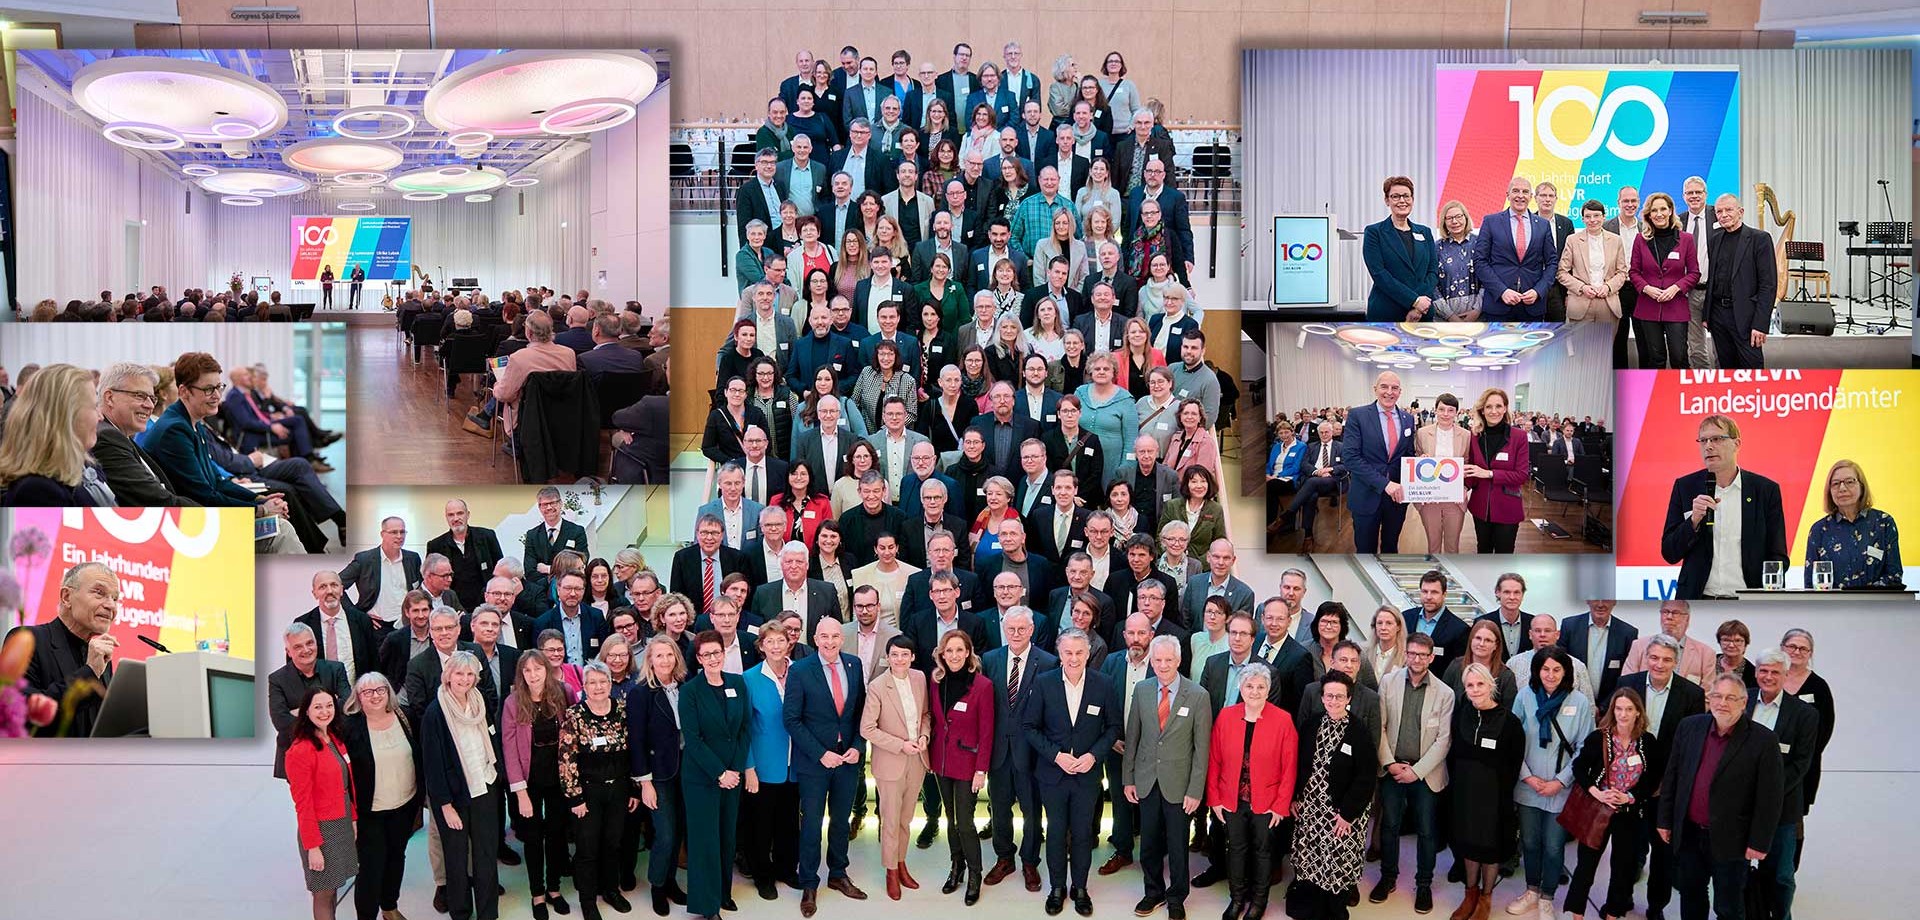 Eine Collage mehrerer Fotos mit den Teilnehmenden und den Akteuren des Festakts "100 Jahre Landesjugendämter in NRW" (Foto: LWL/Urban)